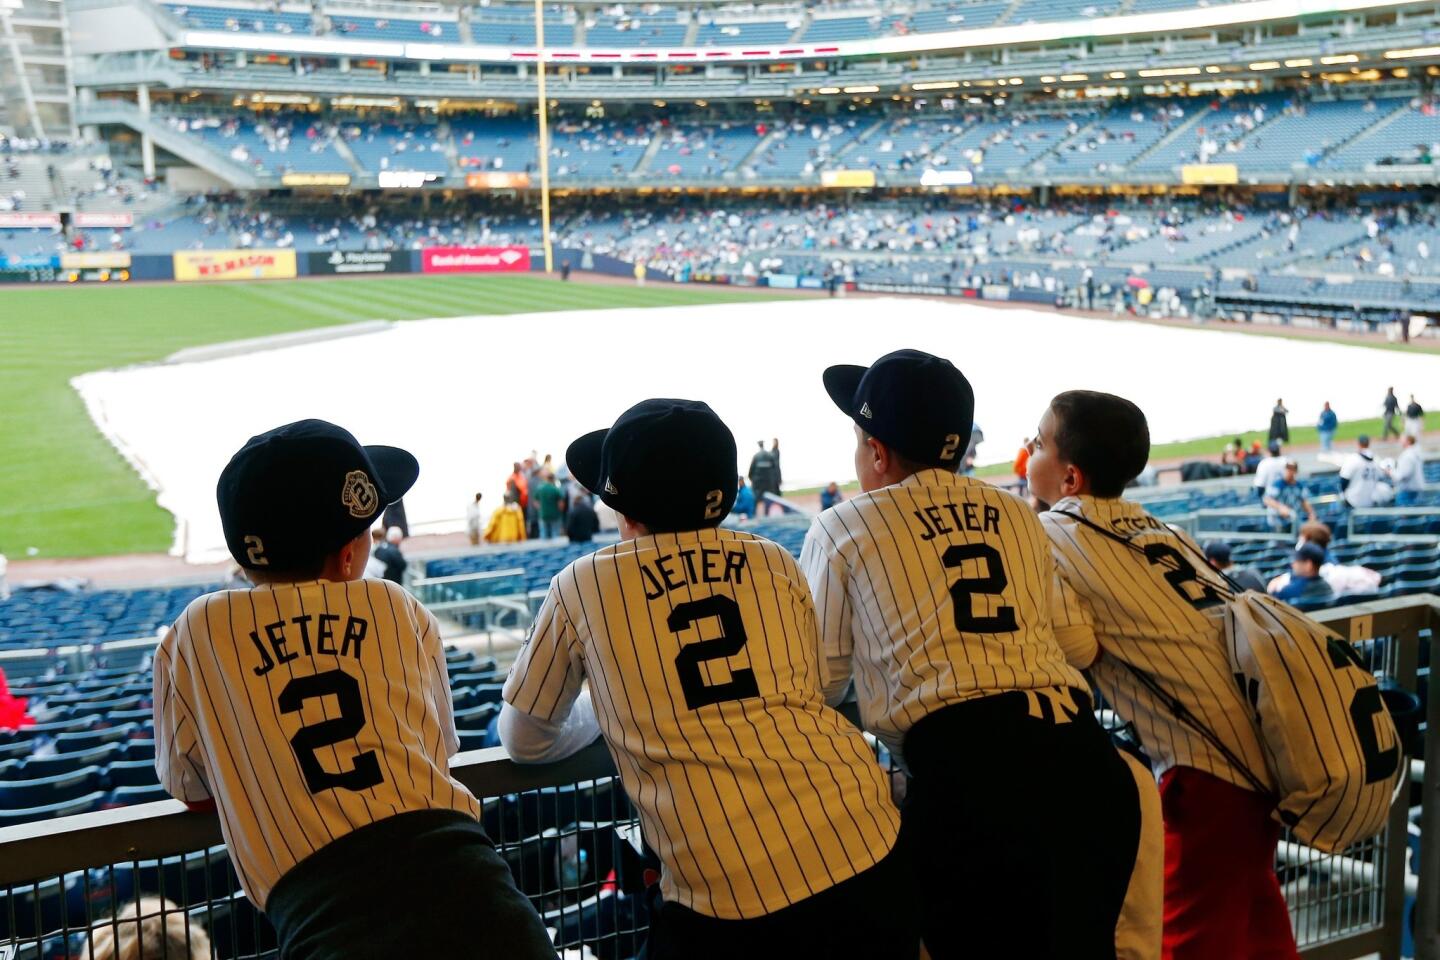 Derek Jeter returns to Yankees in style - Los Angeles Times